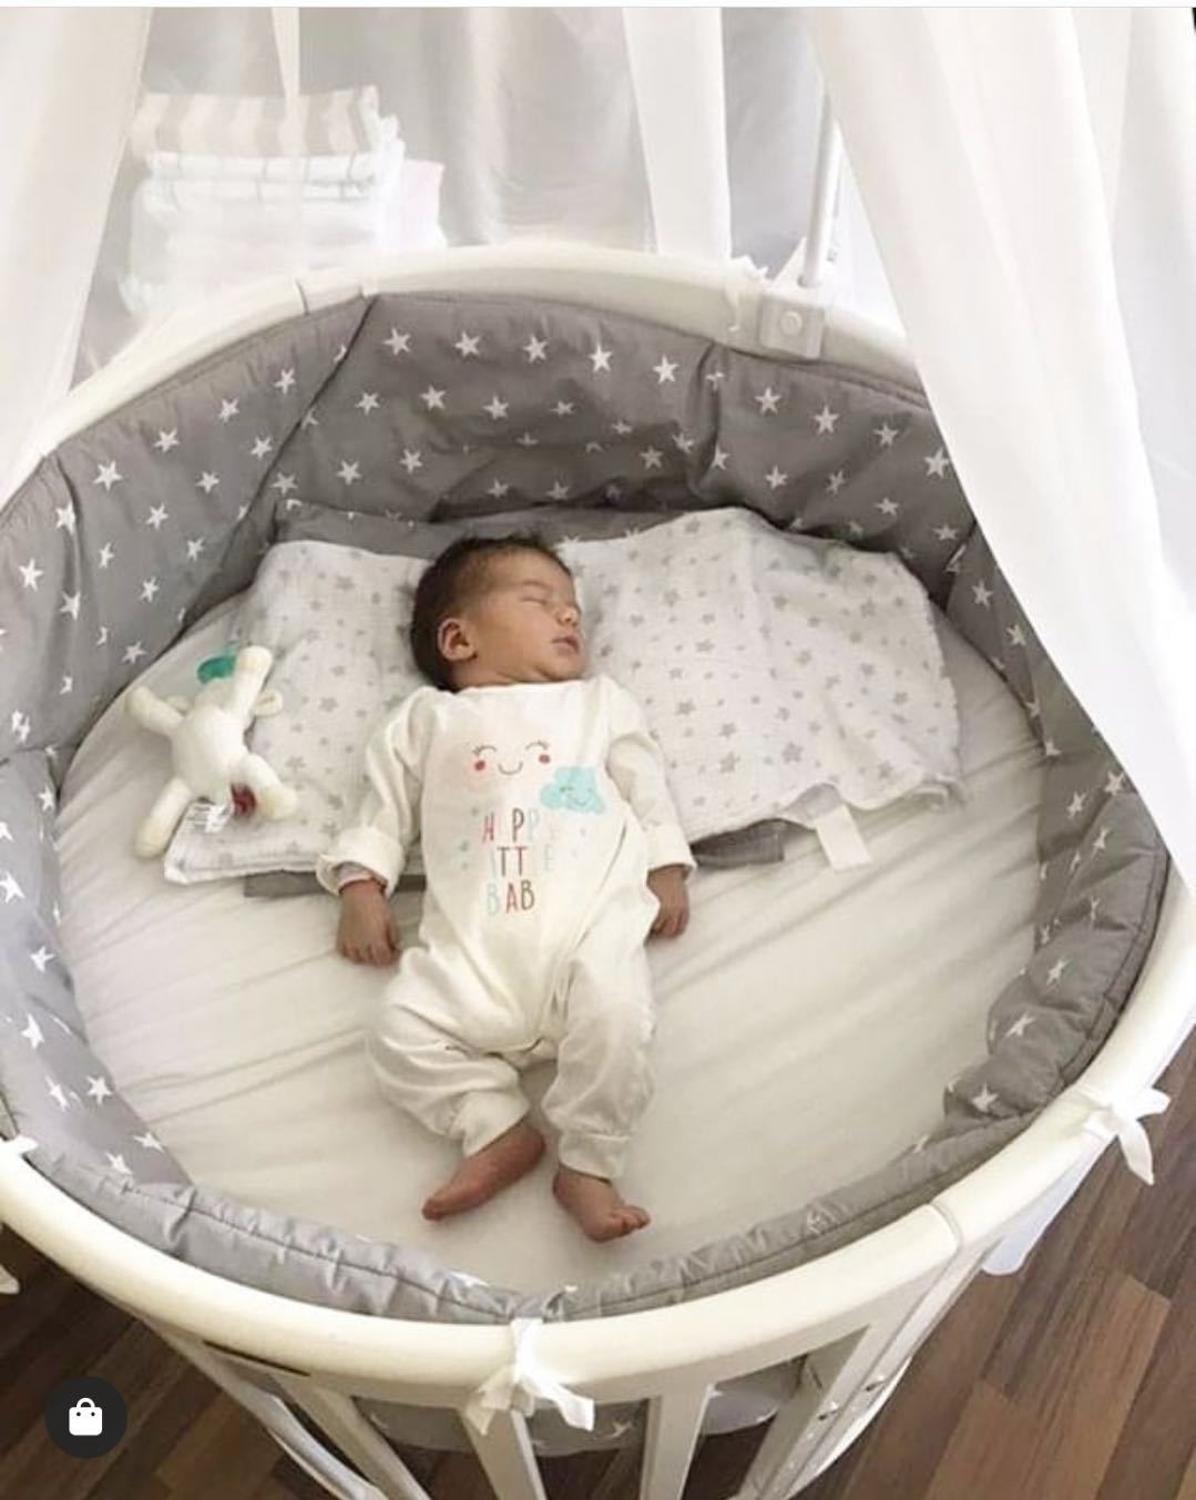 Baby seng kofanger bomuld dobbelt-sider bruge et stykke krybbe omkring pude barneseng beskytter puder nyfødte spædbarn værelse indretning seng hegn